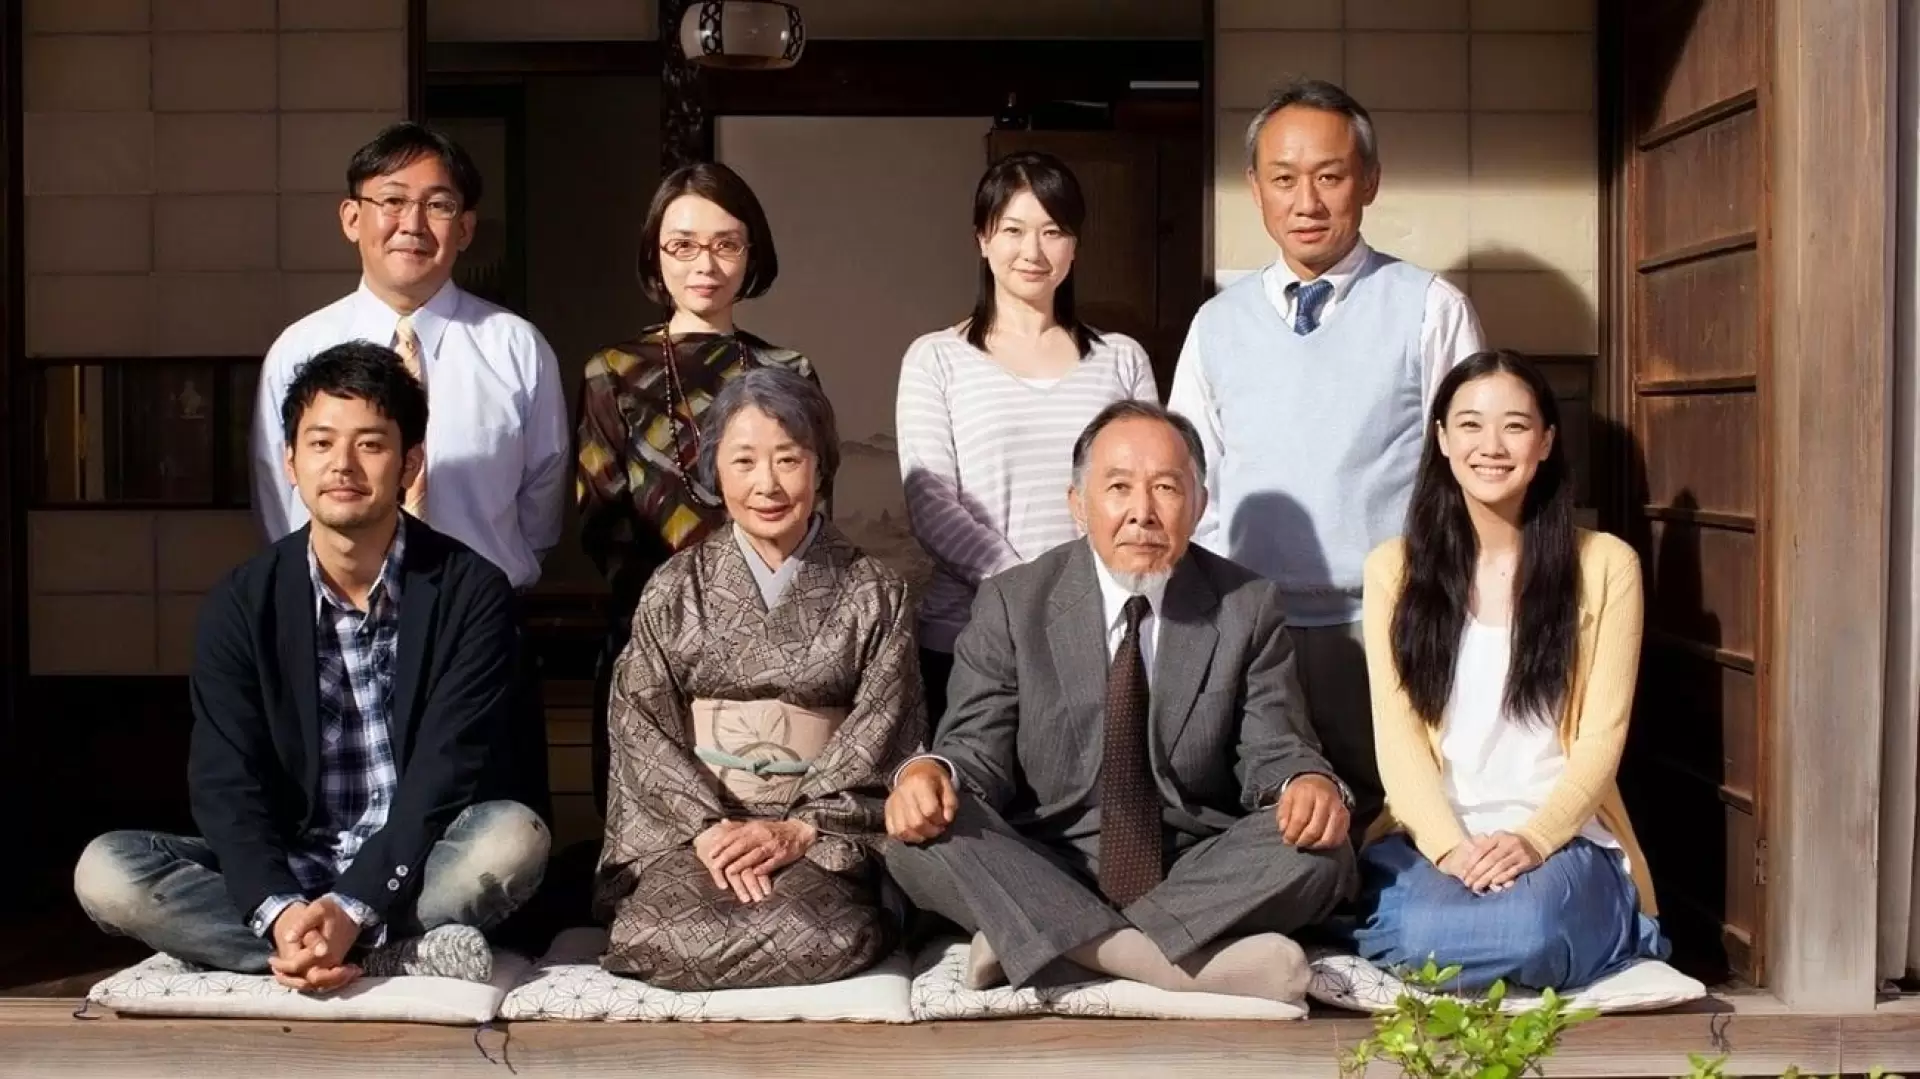 دانلود فیلم Tokyo Family 2013